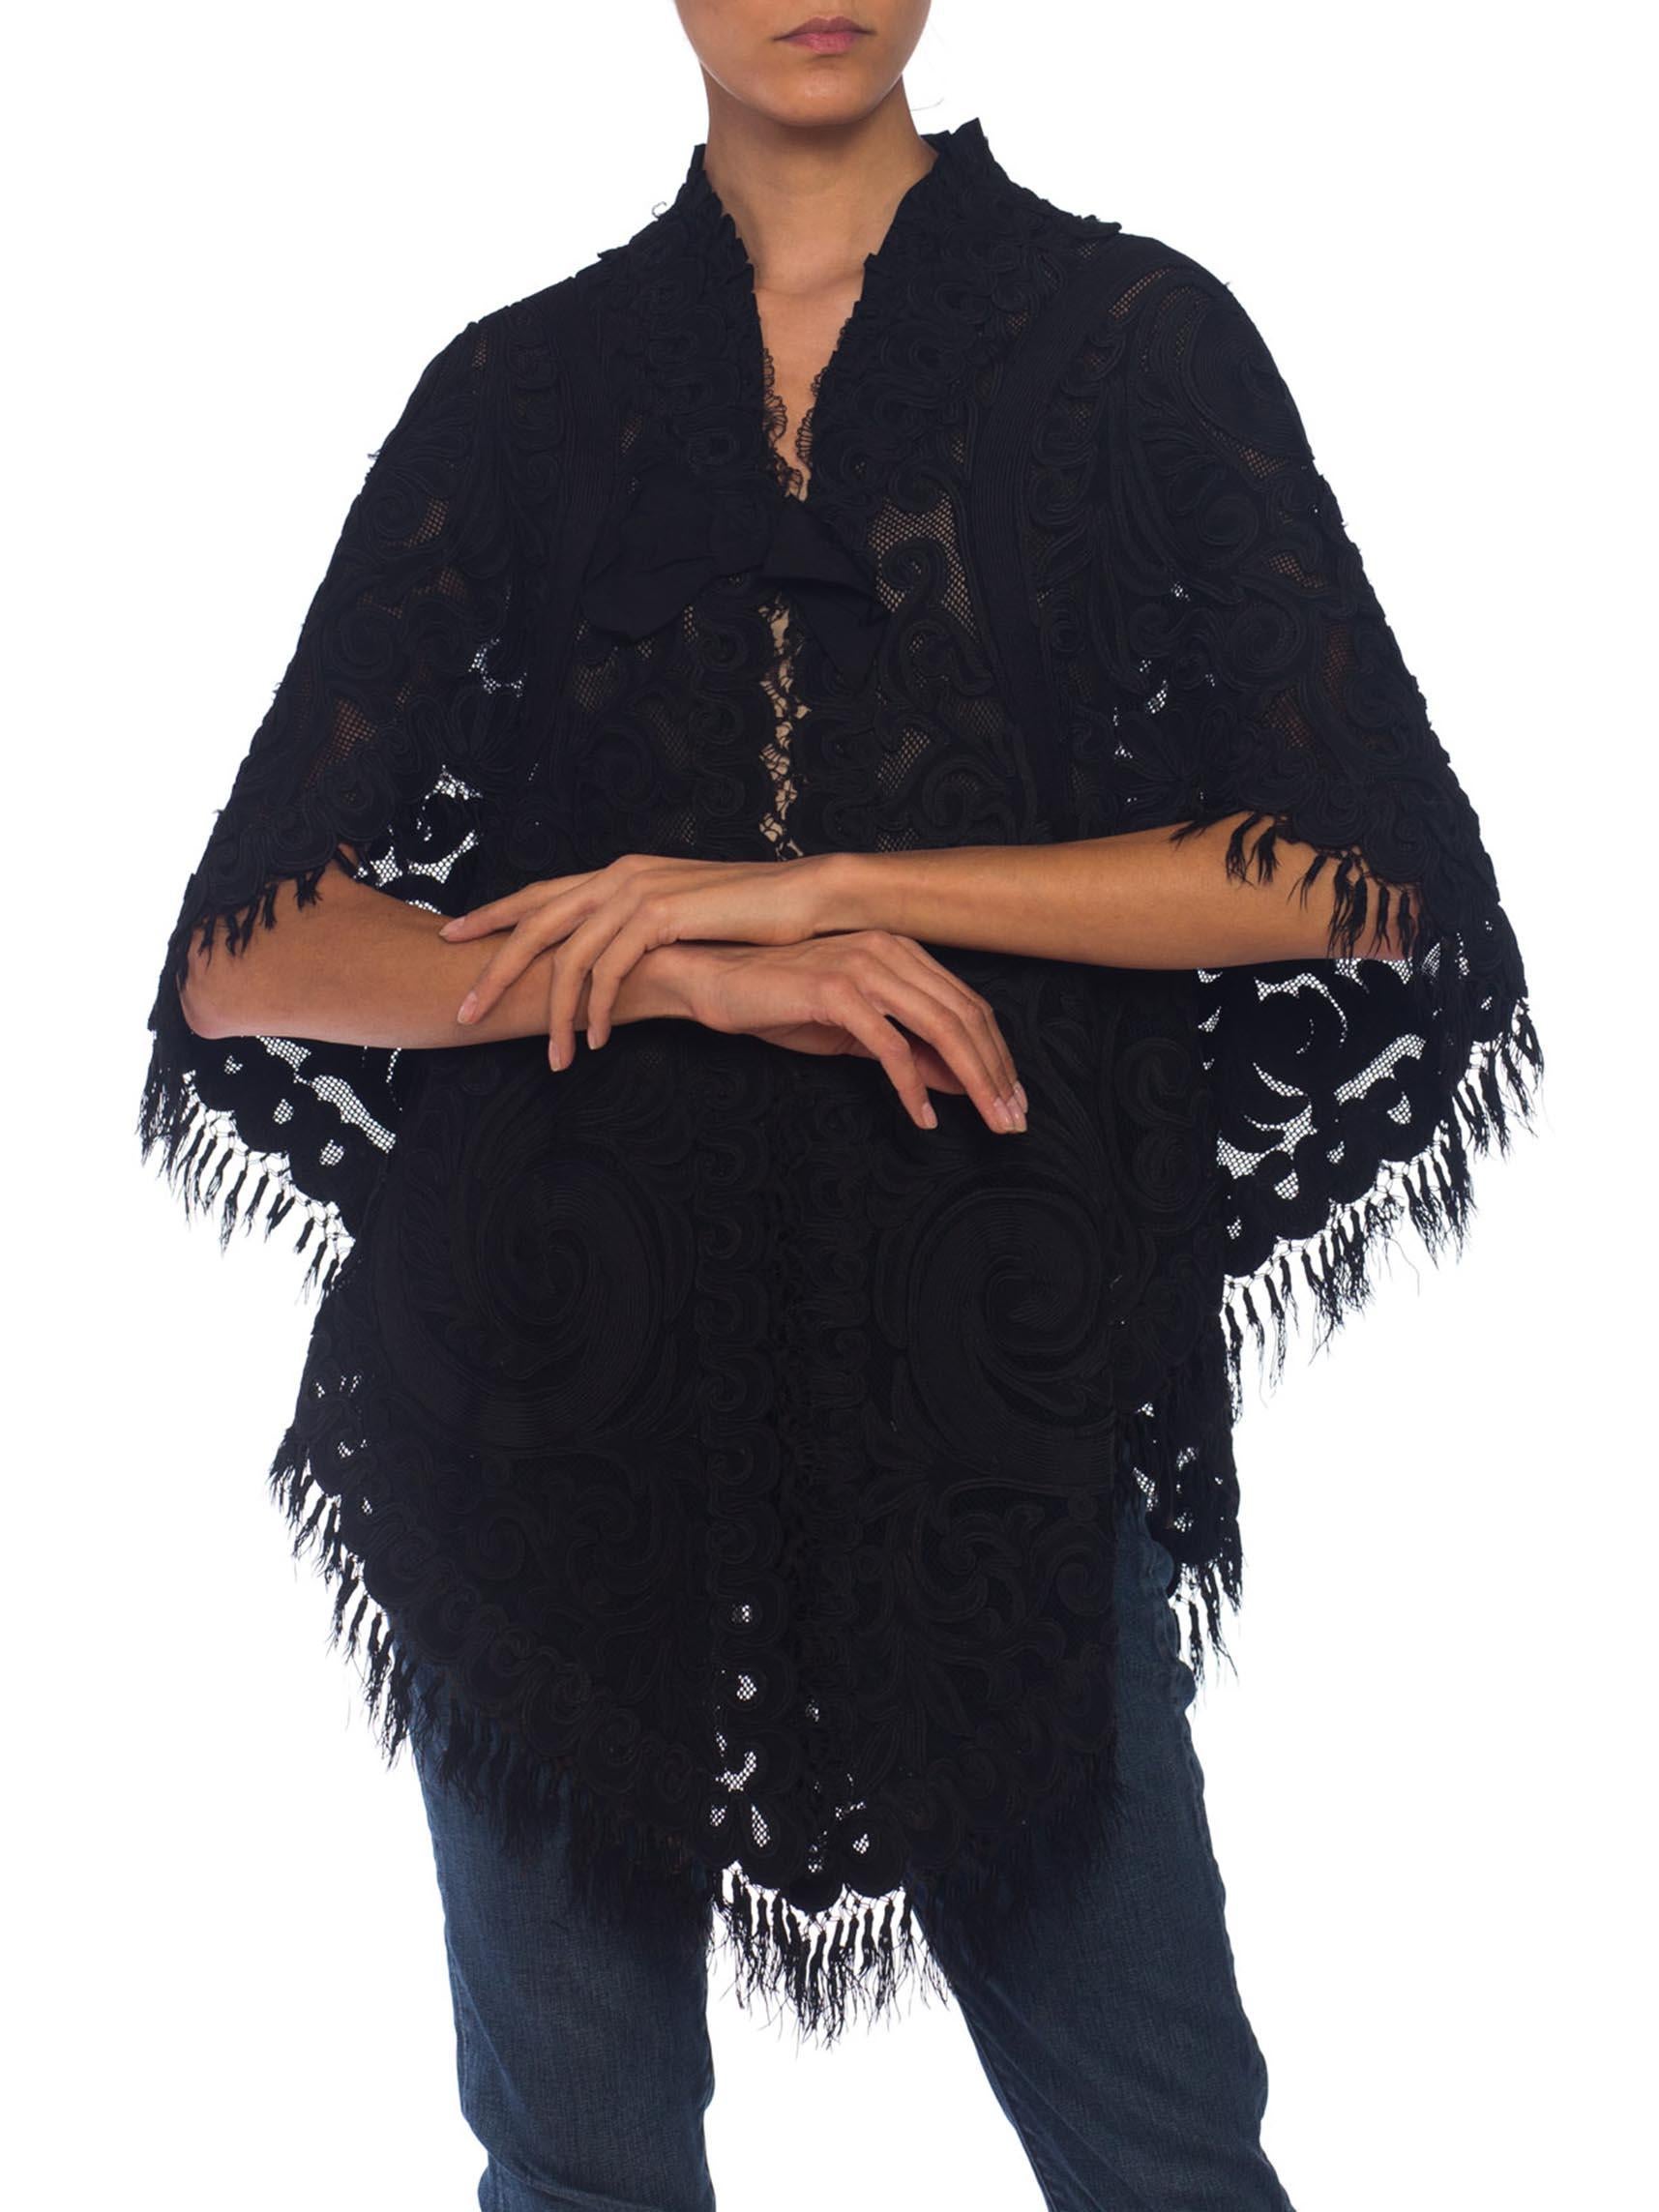 Women's Victorian Black Silk & Cotton Net Appliquéd Dolman Styled Mantle Cape For Sale